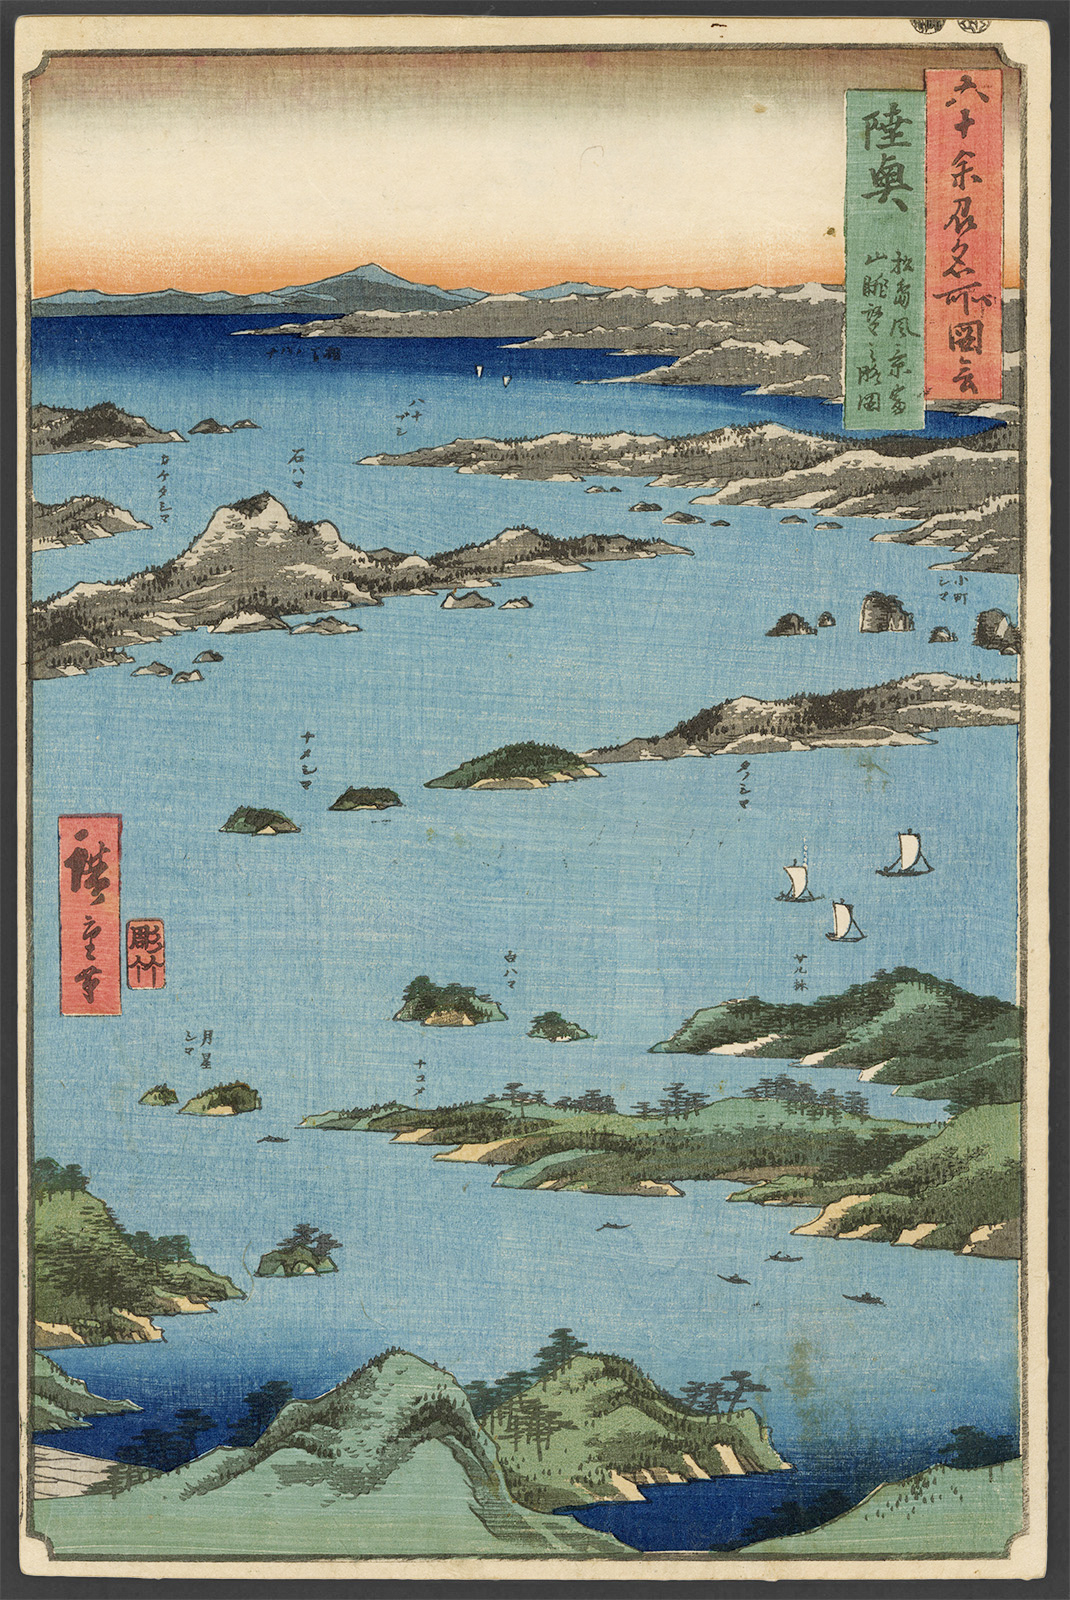 広重 / Hiroshige「六十余州名所図会 陸奥 松島風景富山眺望之略図」